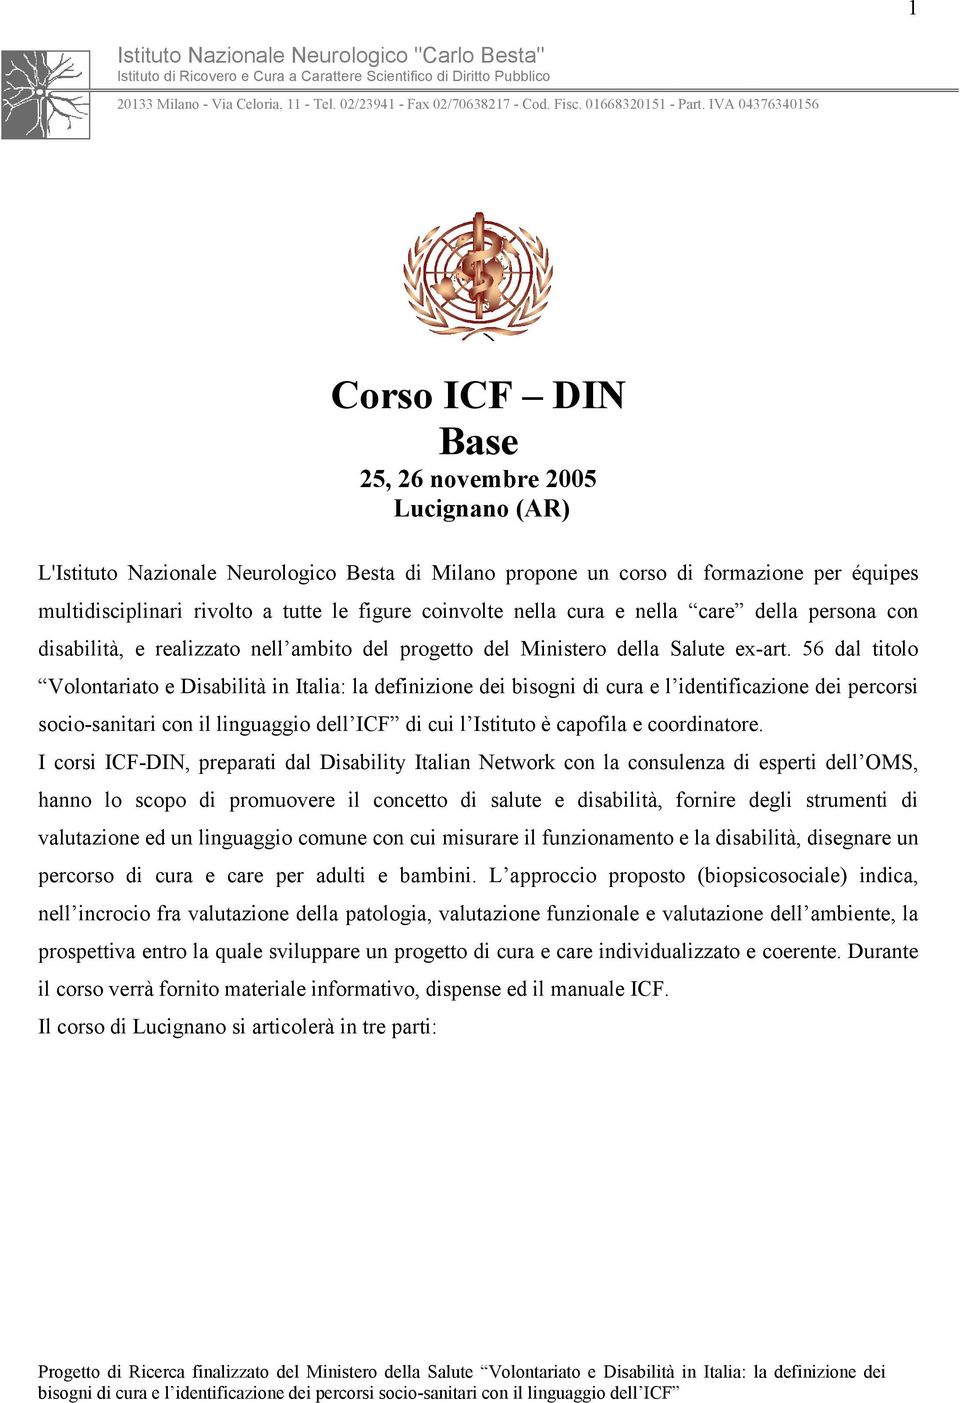 IVA 04376340156 Corso ICF DIN Base 25, 26 novembre 2005 Lucignano (AR) L'Istituto Nazionale Neurologico Besta di Milano propone un corso di formazione per équipes multidisciplinari rivolto a tutte le